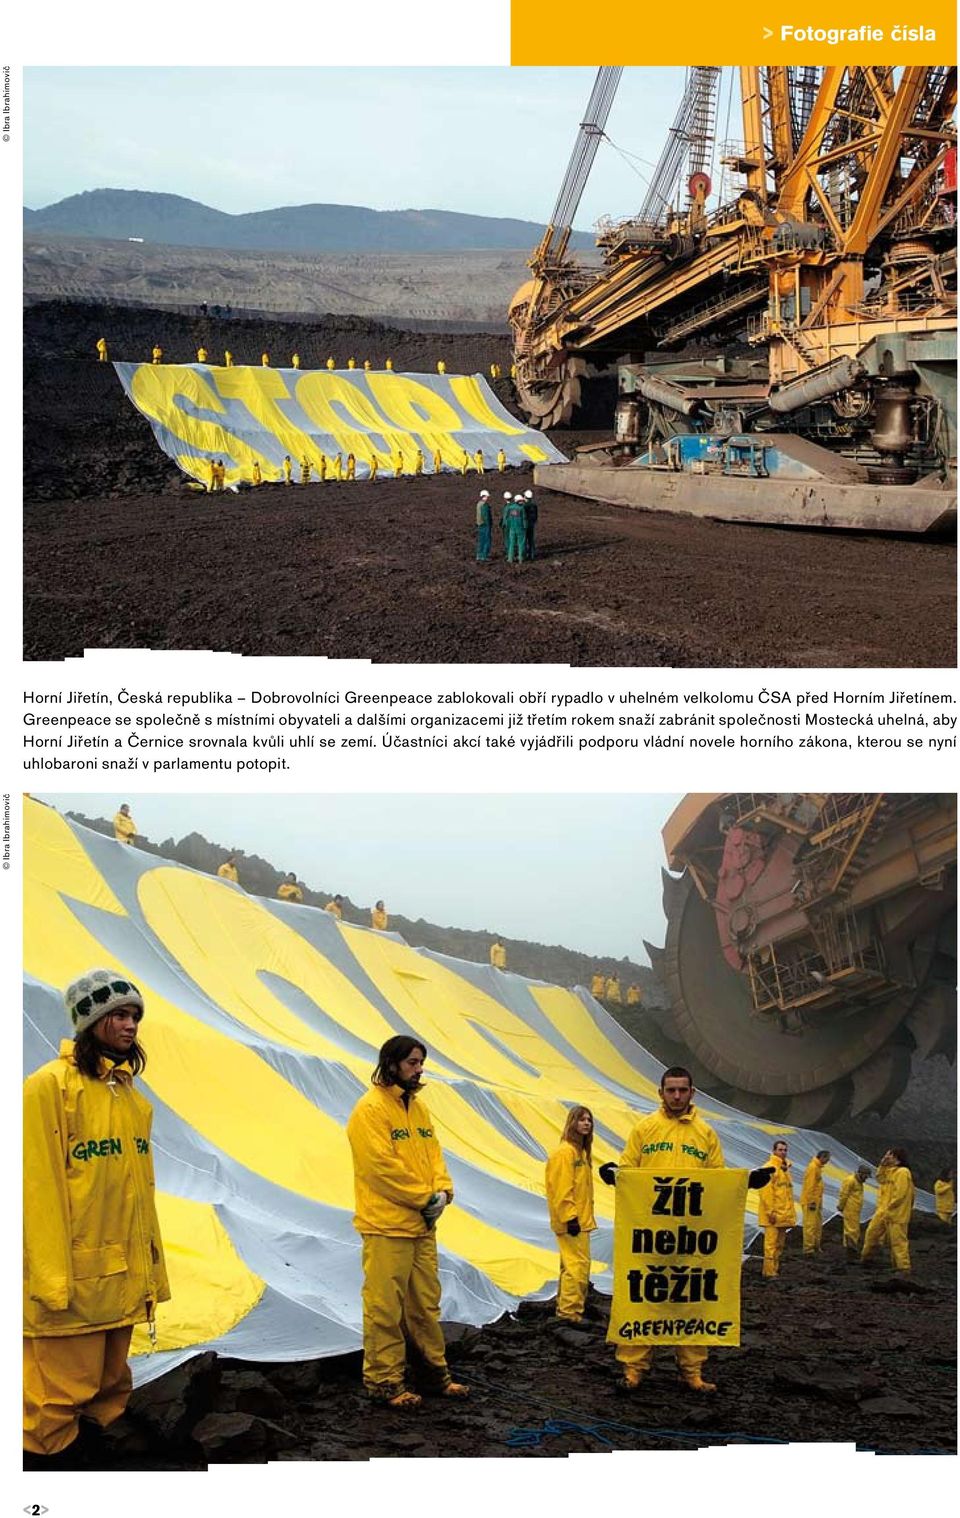 Greenpeace se společně s místními obyvateli a dalšími organizacemi již třetím rokem snaží zabránit společnosti Mostecká